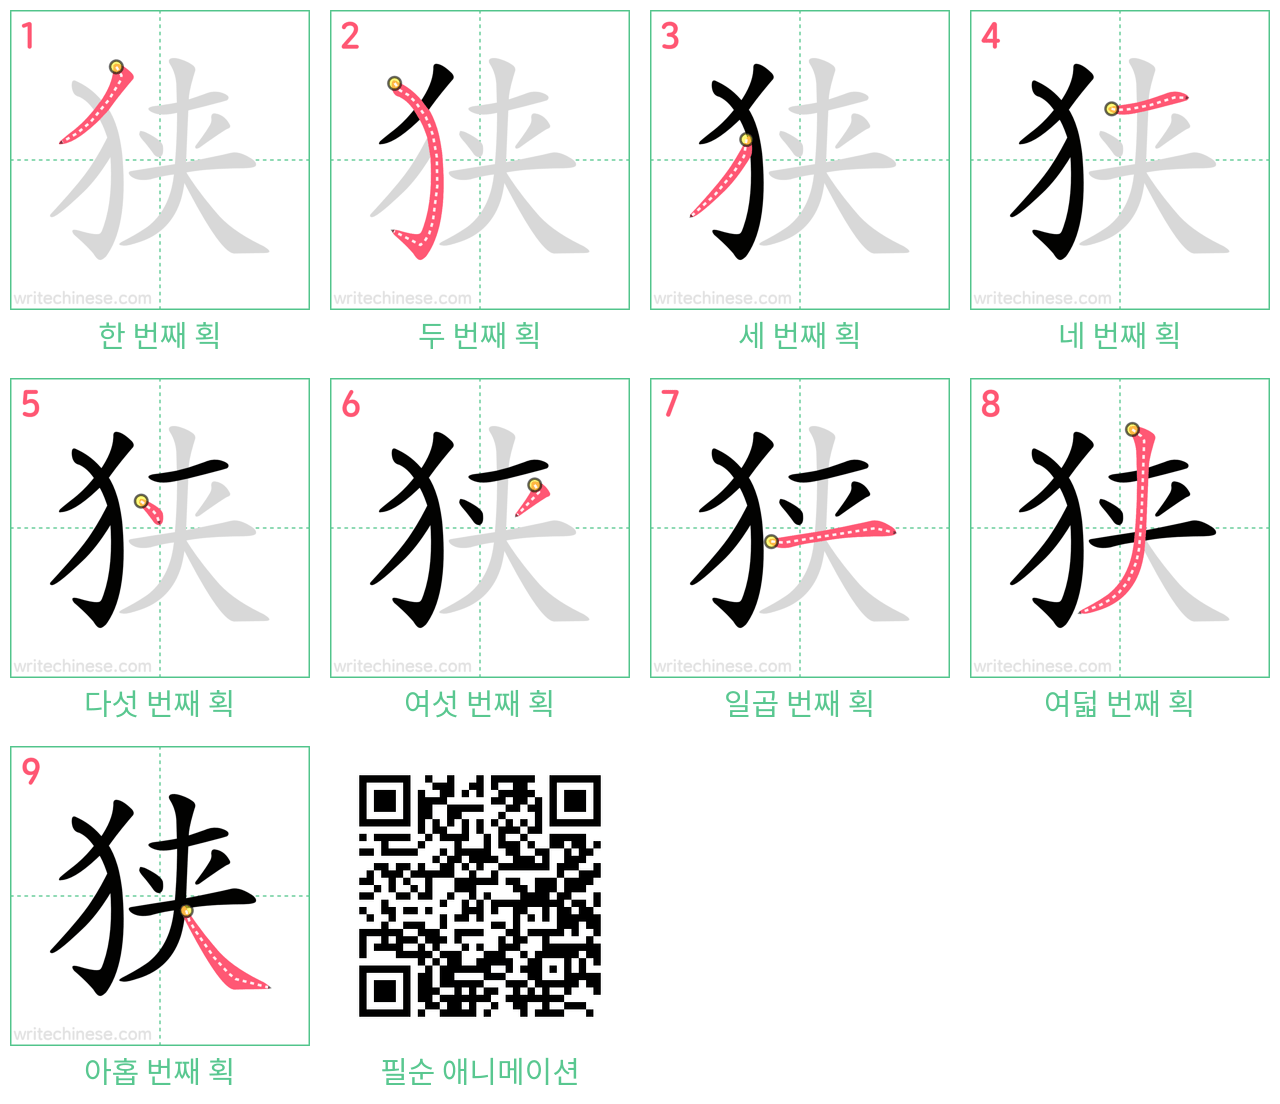 狭 step-by-step stroke order diagrams